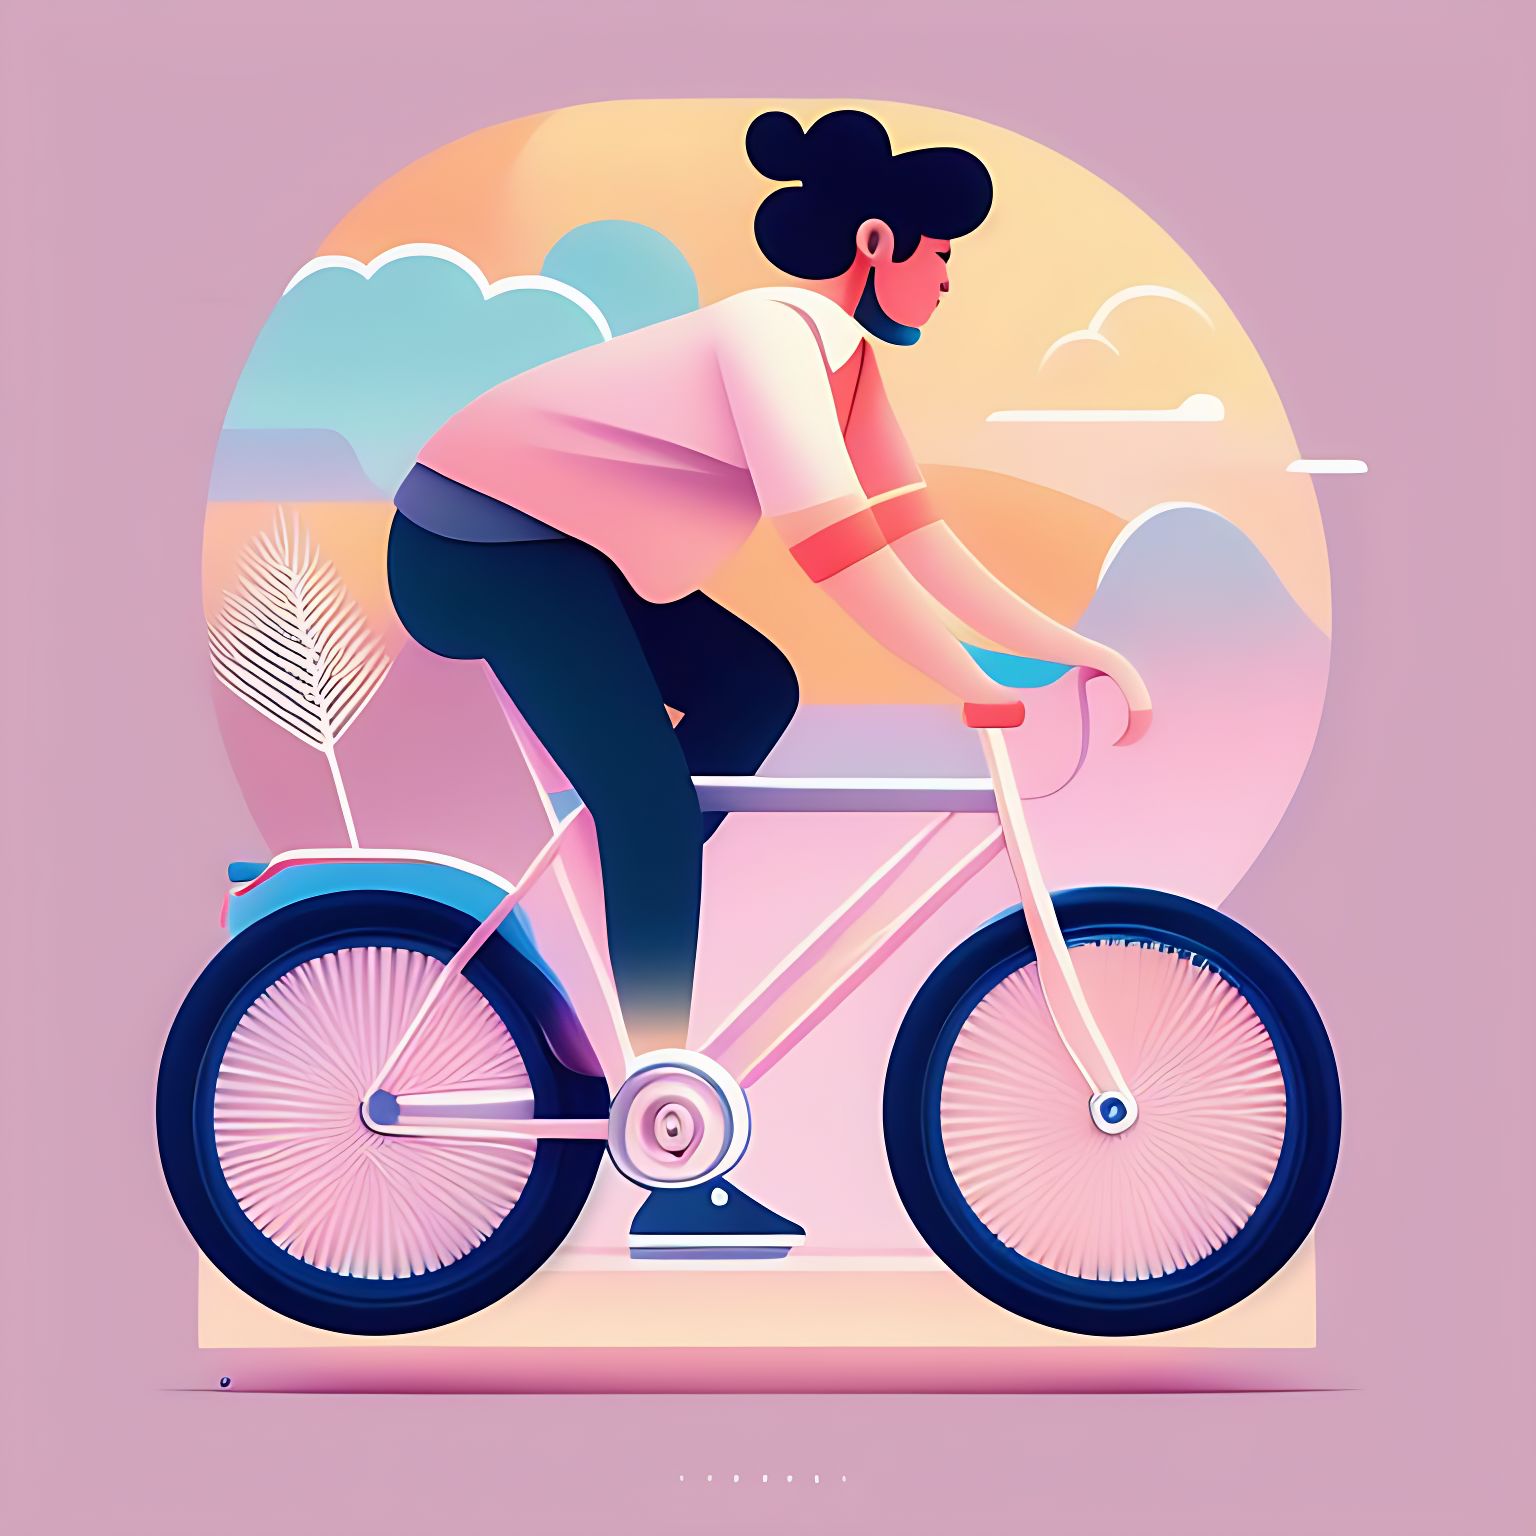 A girl riding a bike